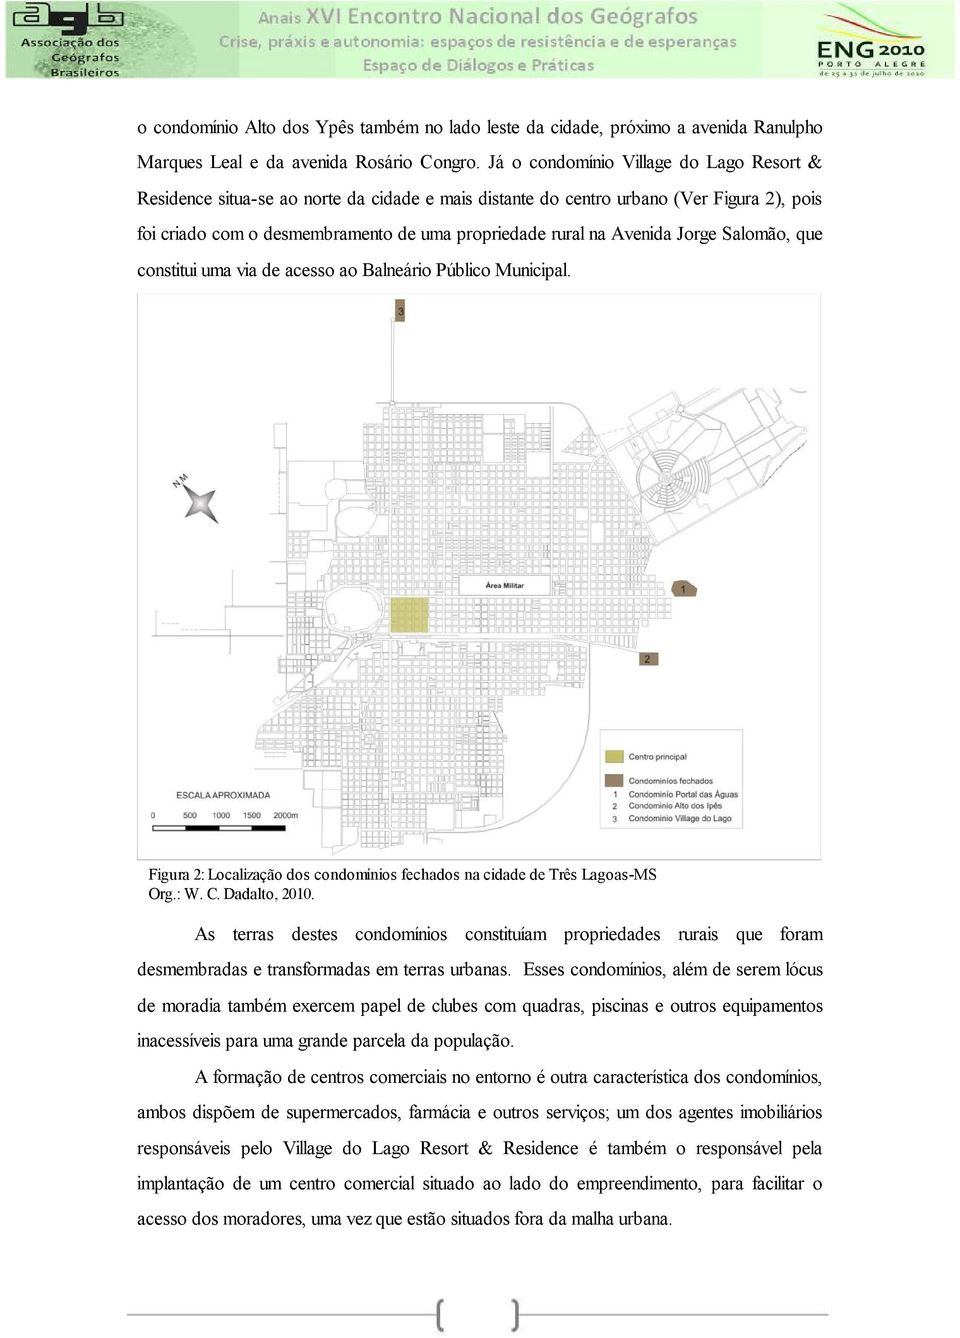 Avenida Jorge Salomão, que constitui uma via de acesso ao Balneário Público Municipal. Figura 2: Localização dos condomínios fechados na cidade de Três Lagoas-MS Org.: W. C. Dadalto, 2010.